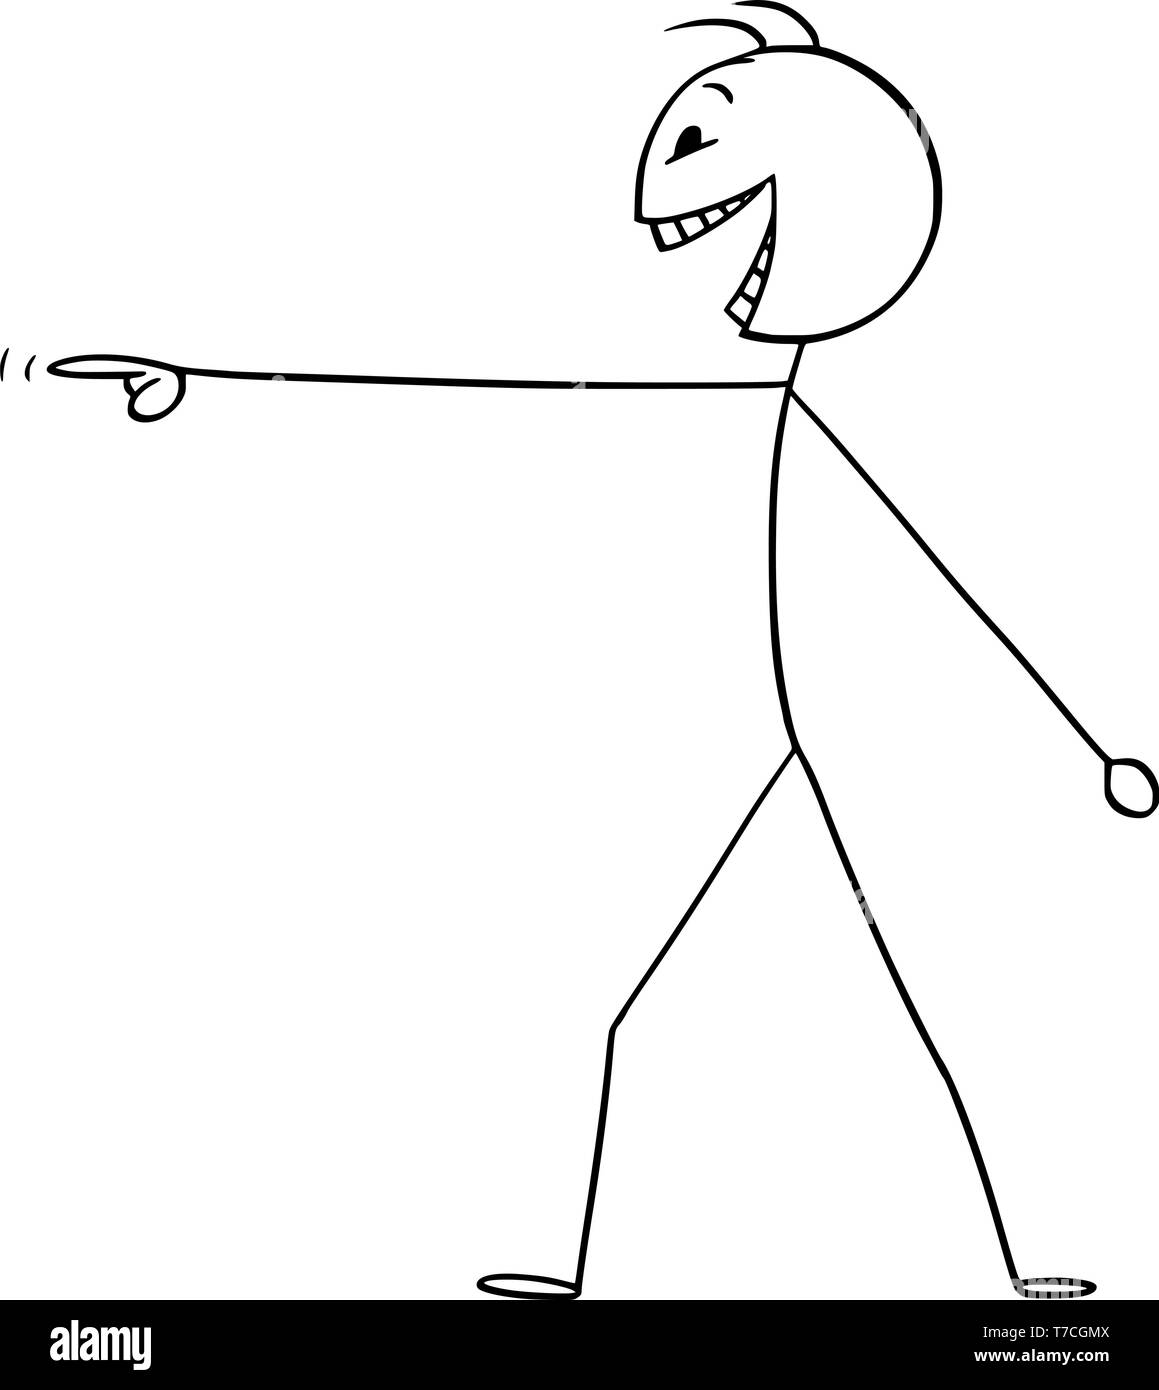 Vector cartoon stick figure dessin illustration conceptuelle de fou ou fou ou personne pointant son doigt et rire. Illustration de Vecteur